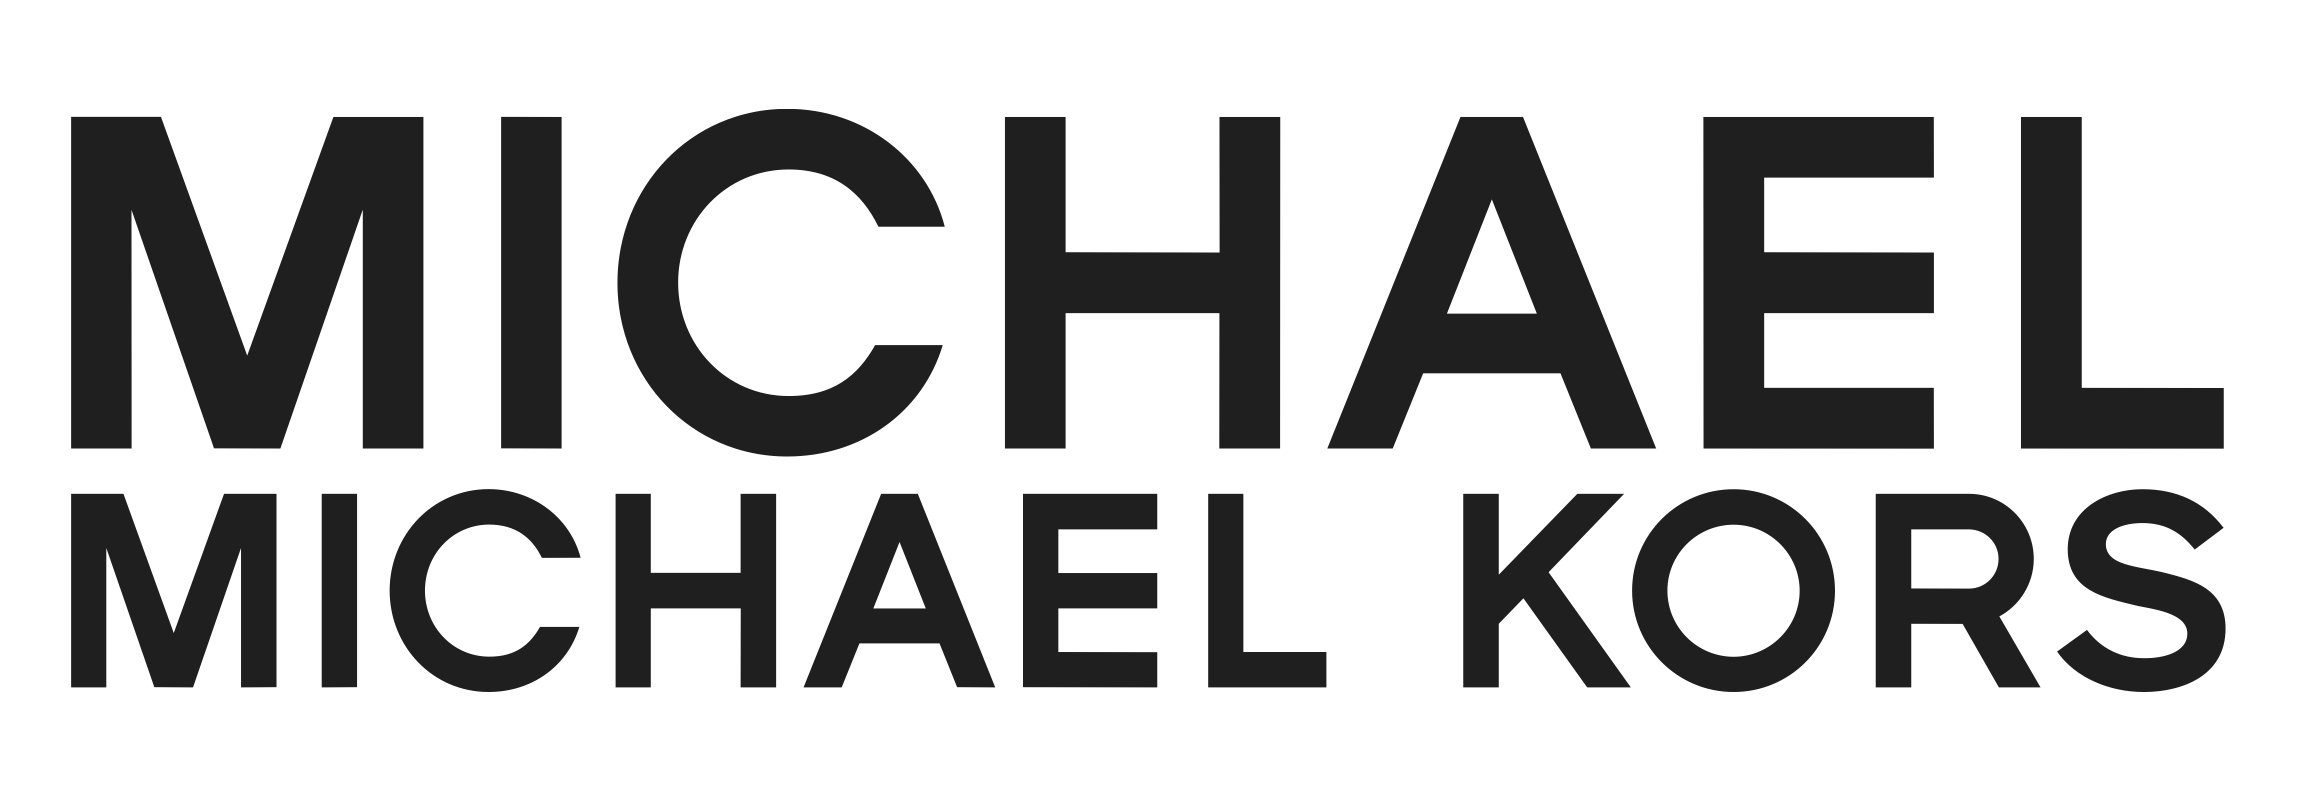 michael kors new logo